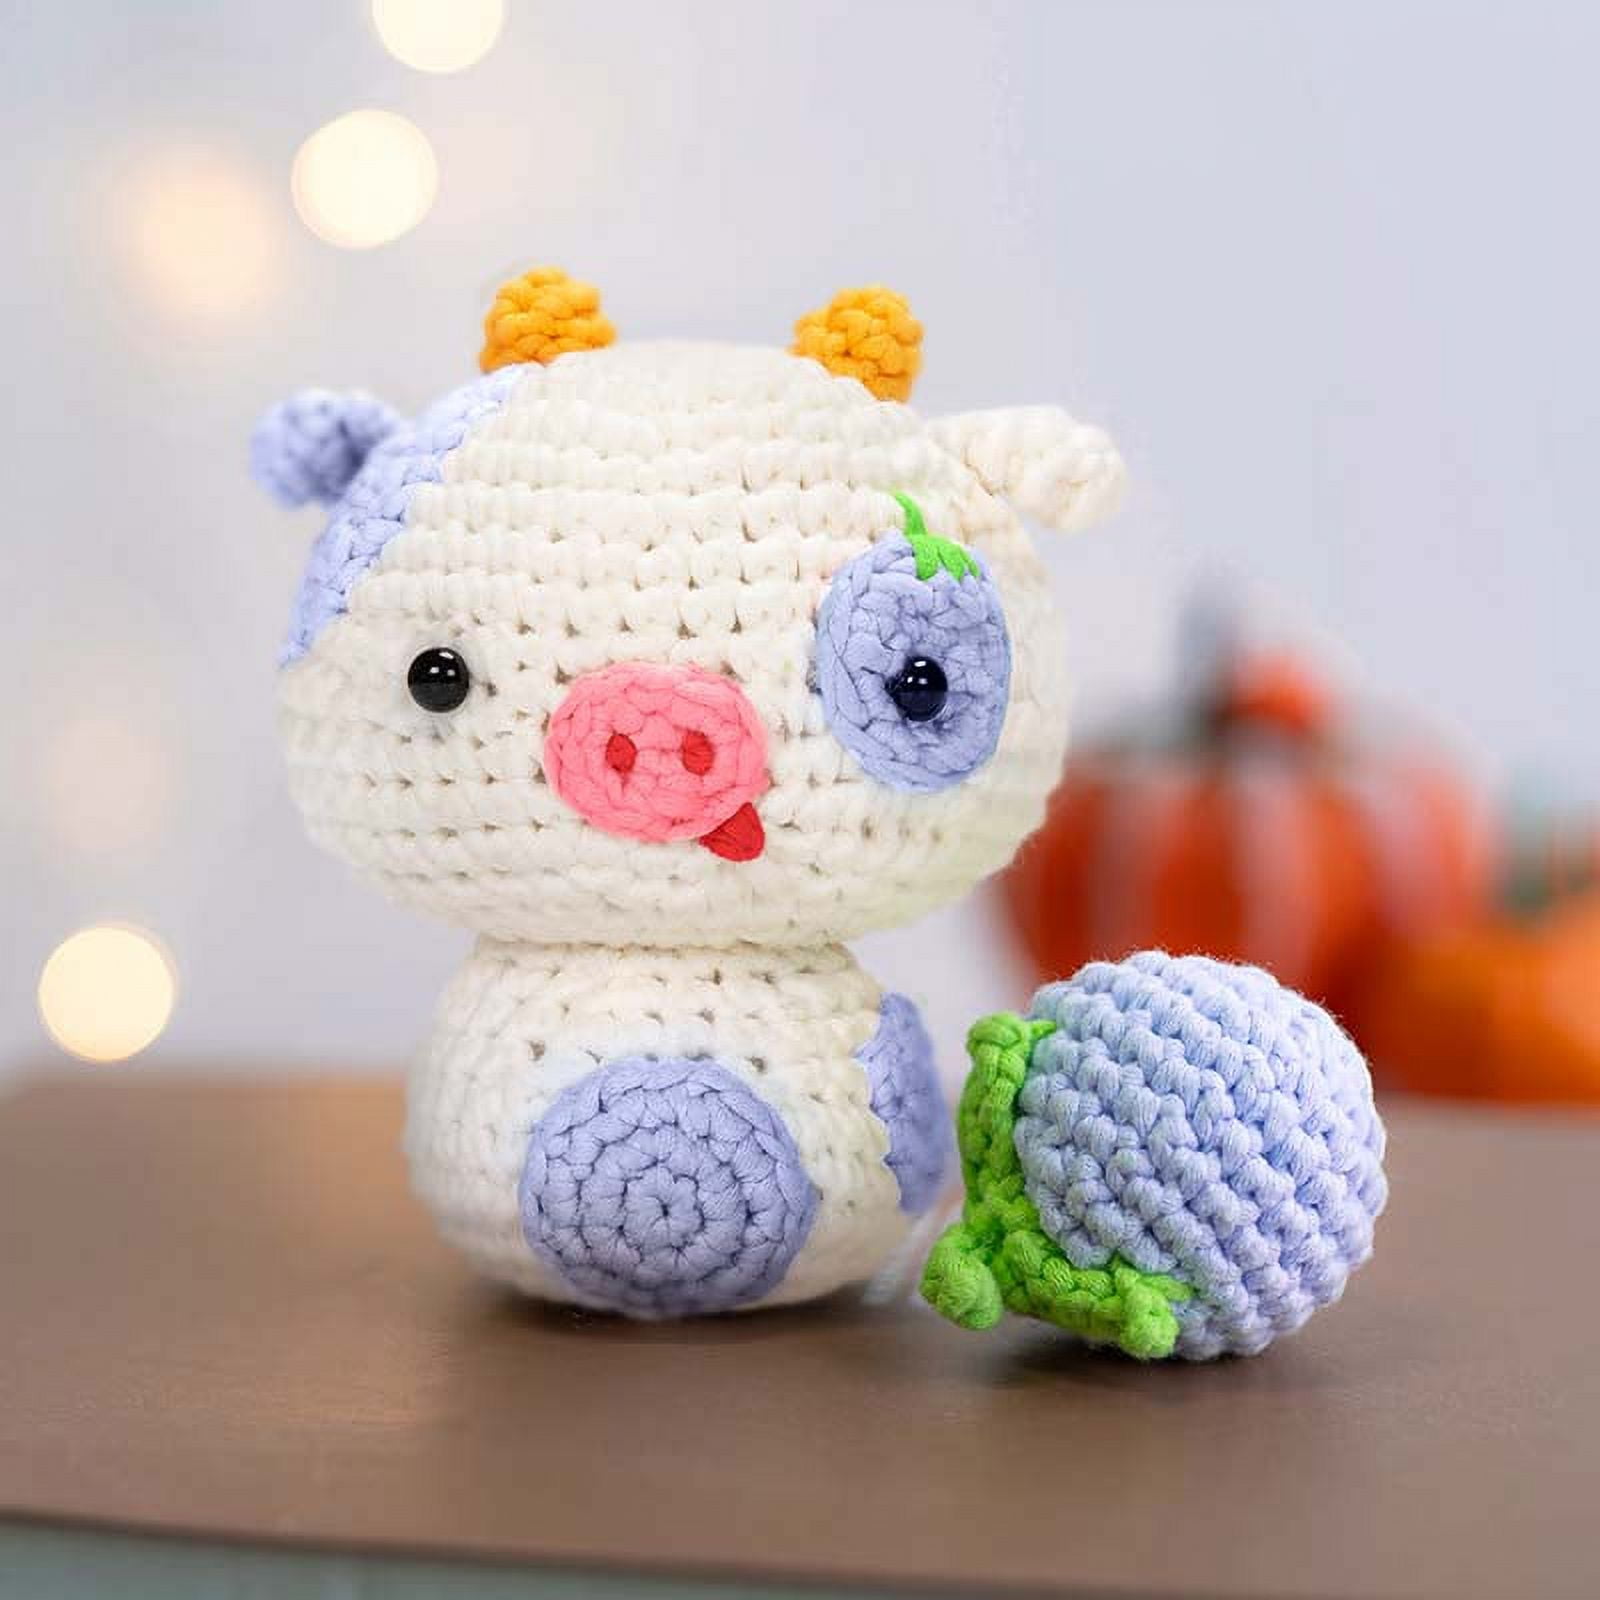 MGahyi 3 Set Crochet Kit, DIY Crochet Kit for Beginners, Crochet Starter Kit  for Adults and Kids,Complete Crochet Set to Make 3 PCS  Animals(Jellyfish+Hamster+Frog) Jellyfish&Hamster&Frog